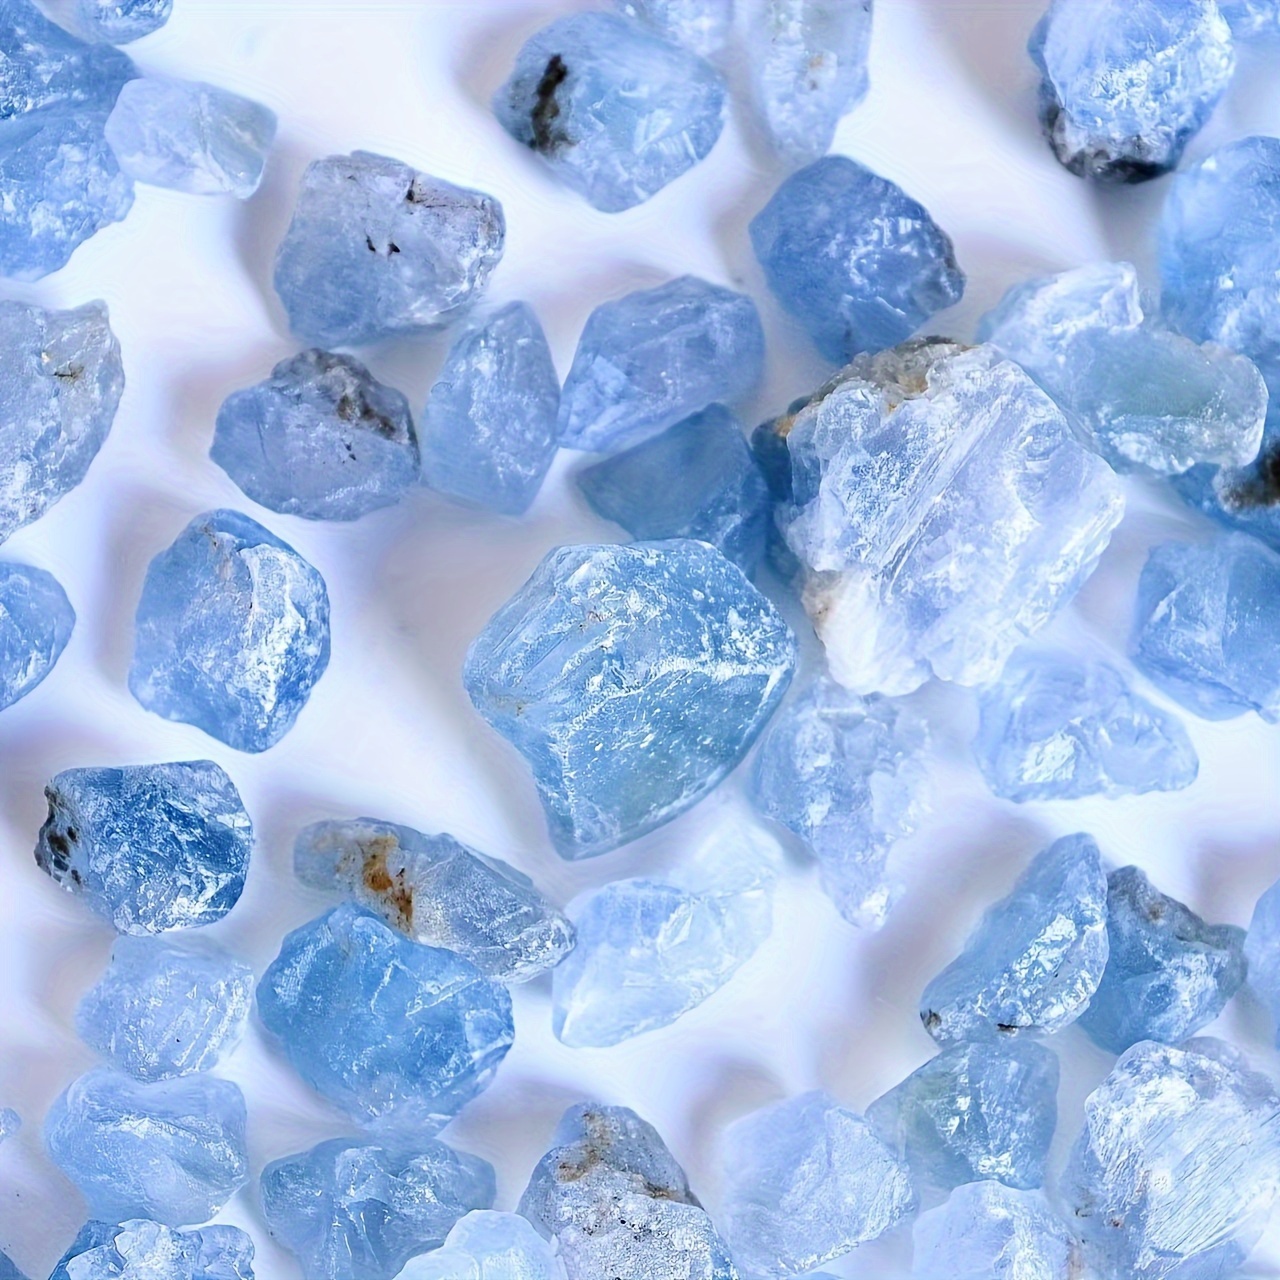 Pierres précieuses,Cristal naturel brut 30g-50g, pierre précieuse